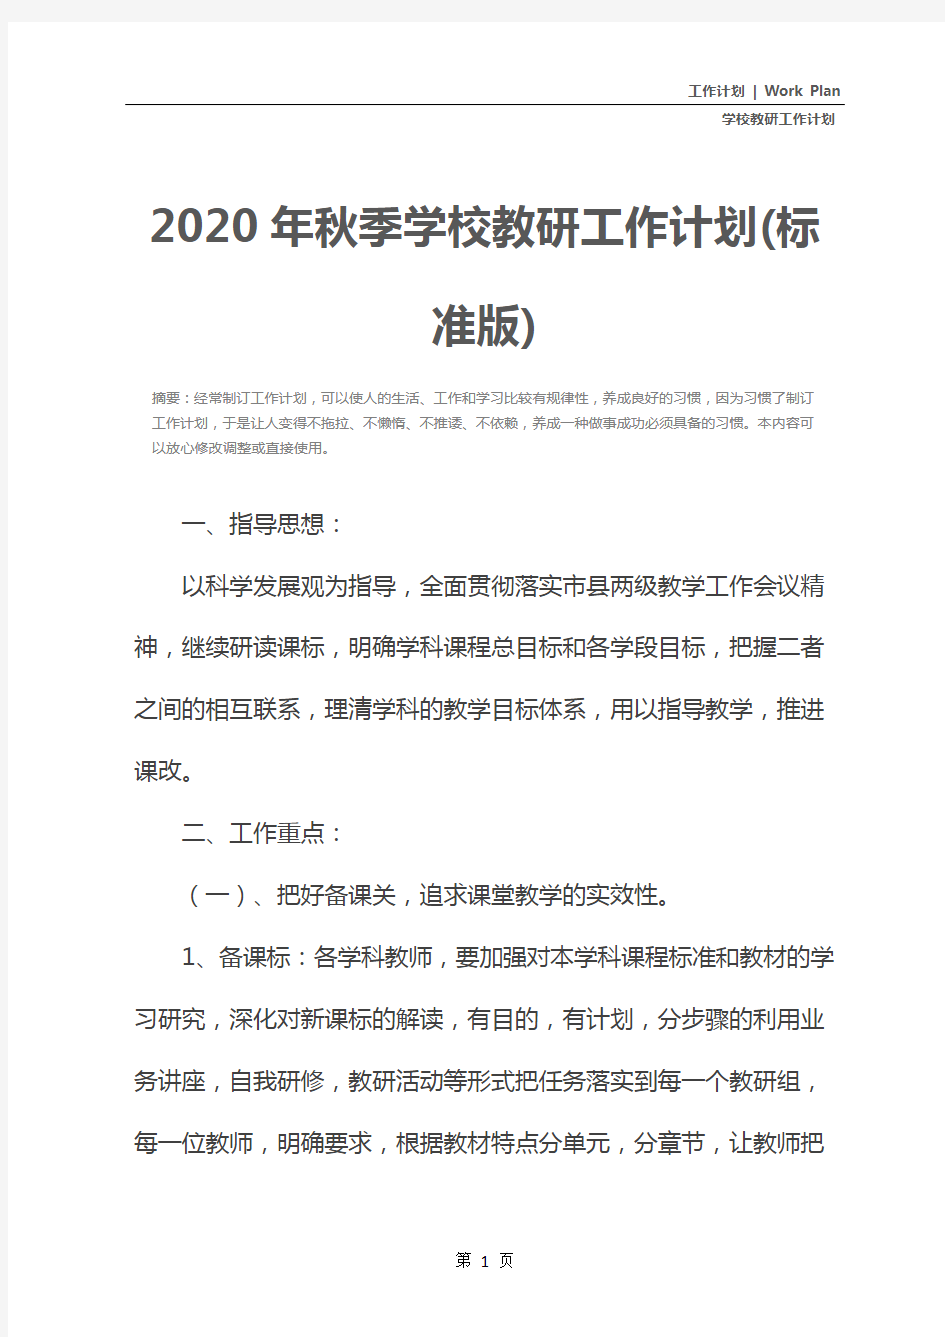 2020年秋季学校教研工作计划(标准版)